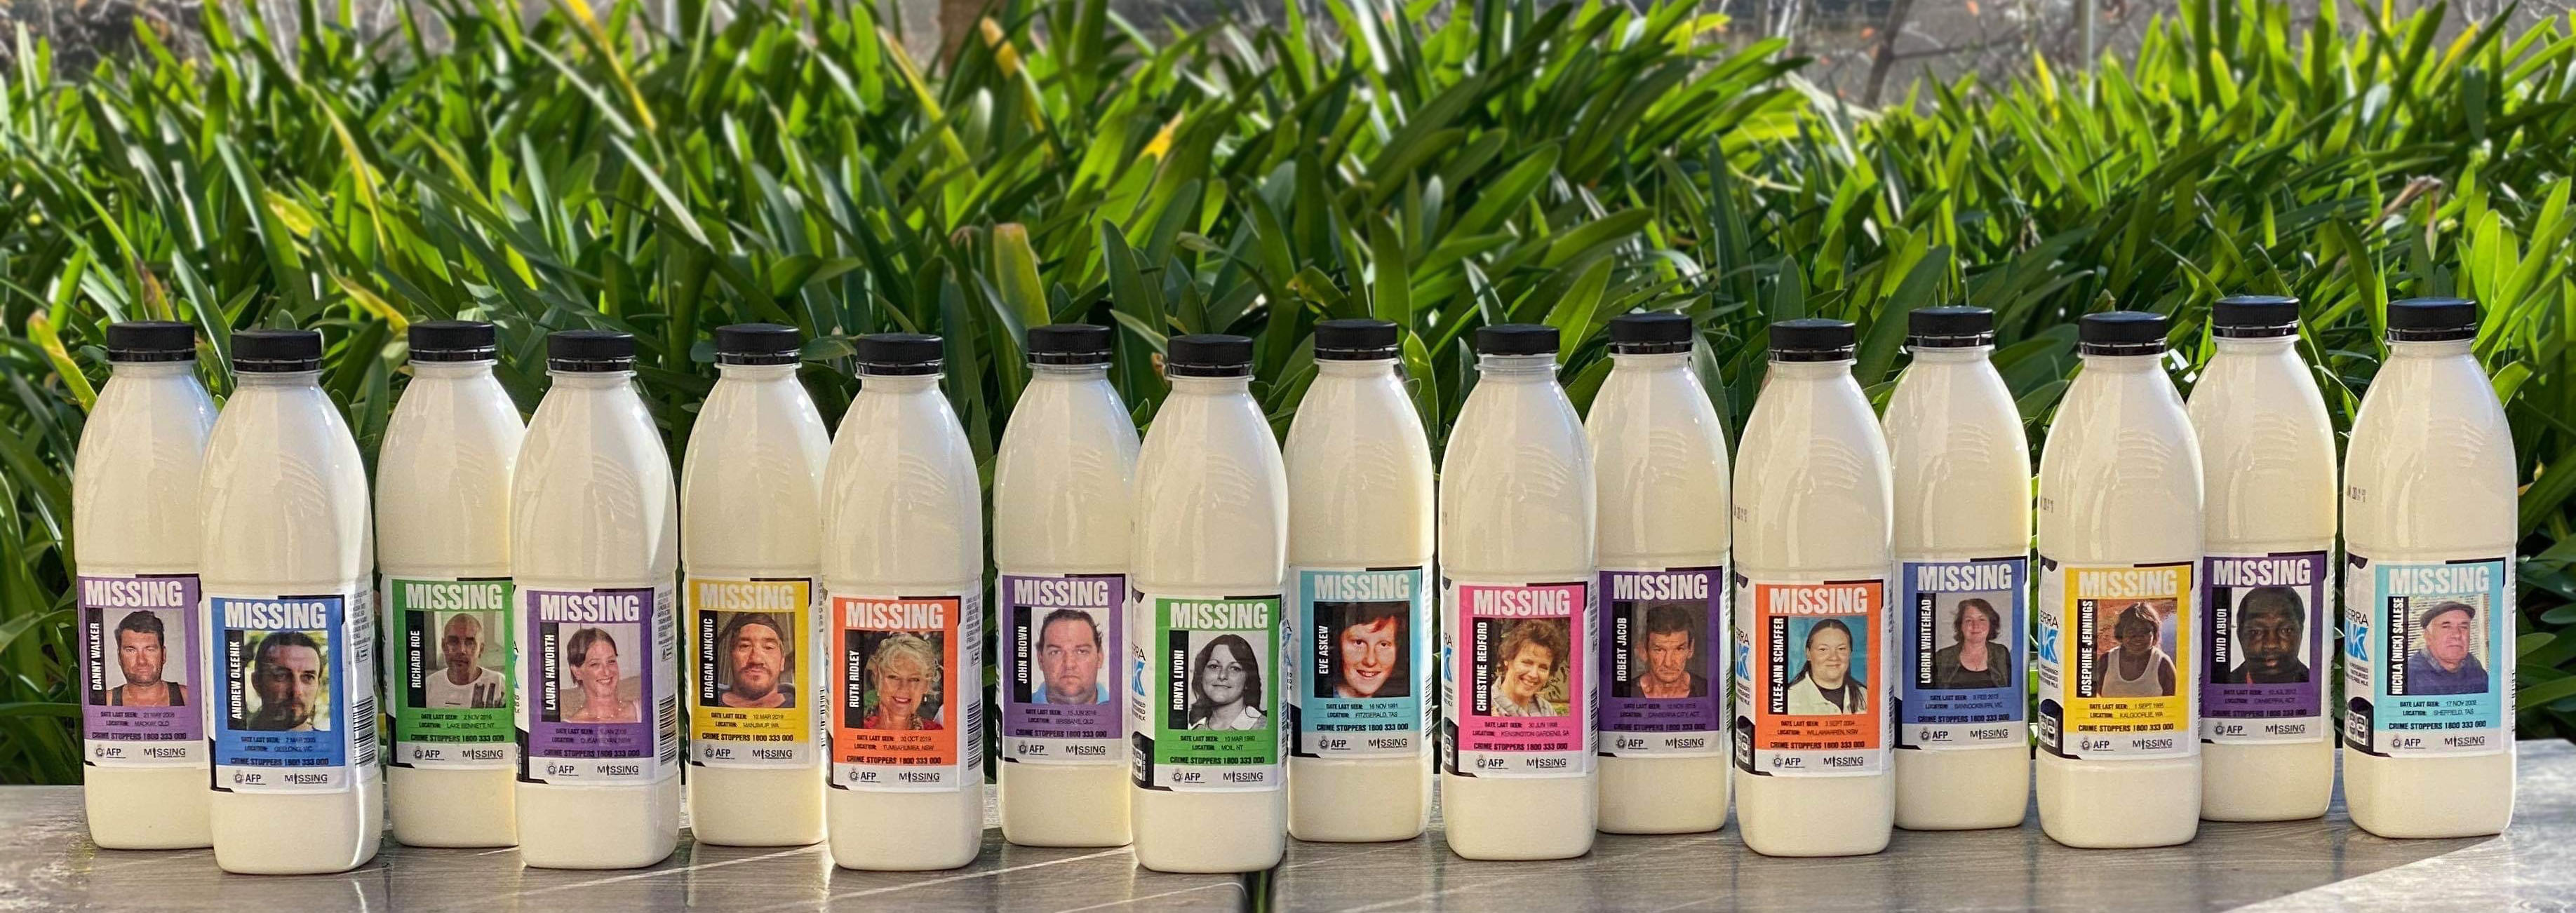 Canberra Milk 2020 Campaign